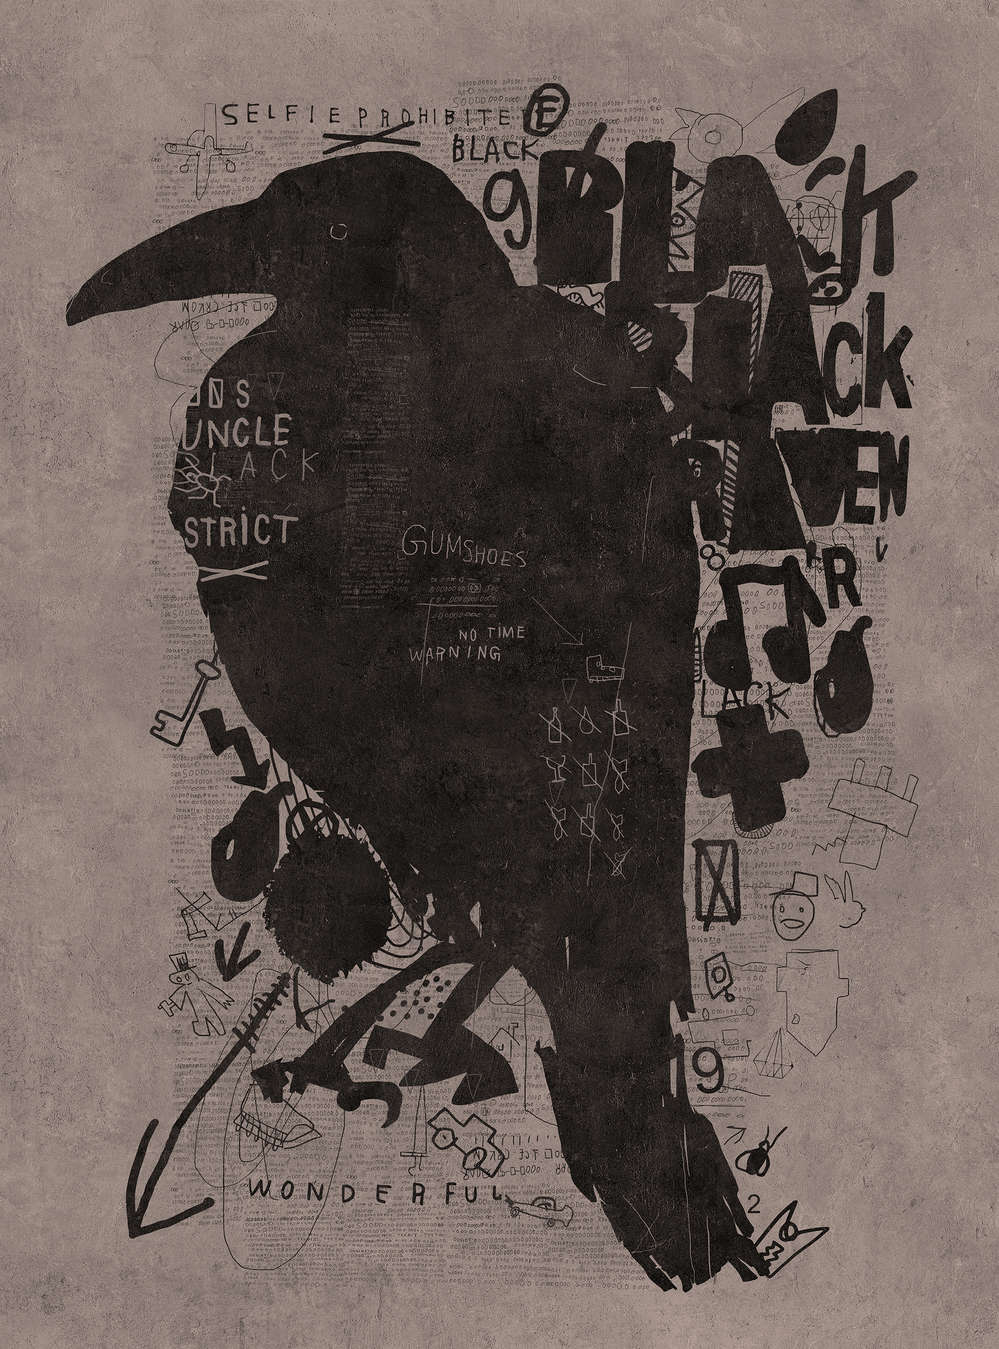             Streets of London 2 - mural de cuervos negros con garabatos
        